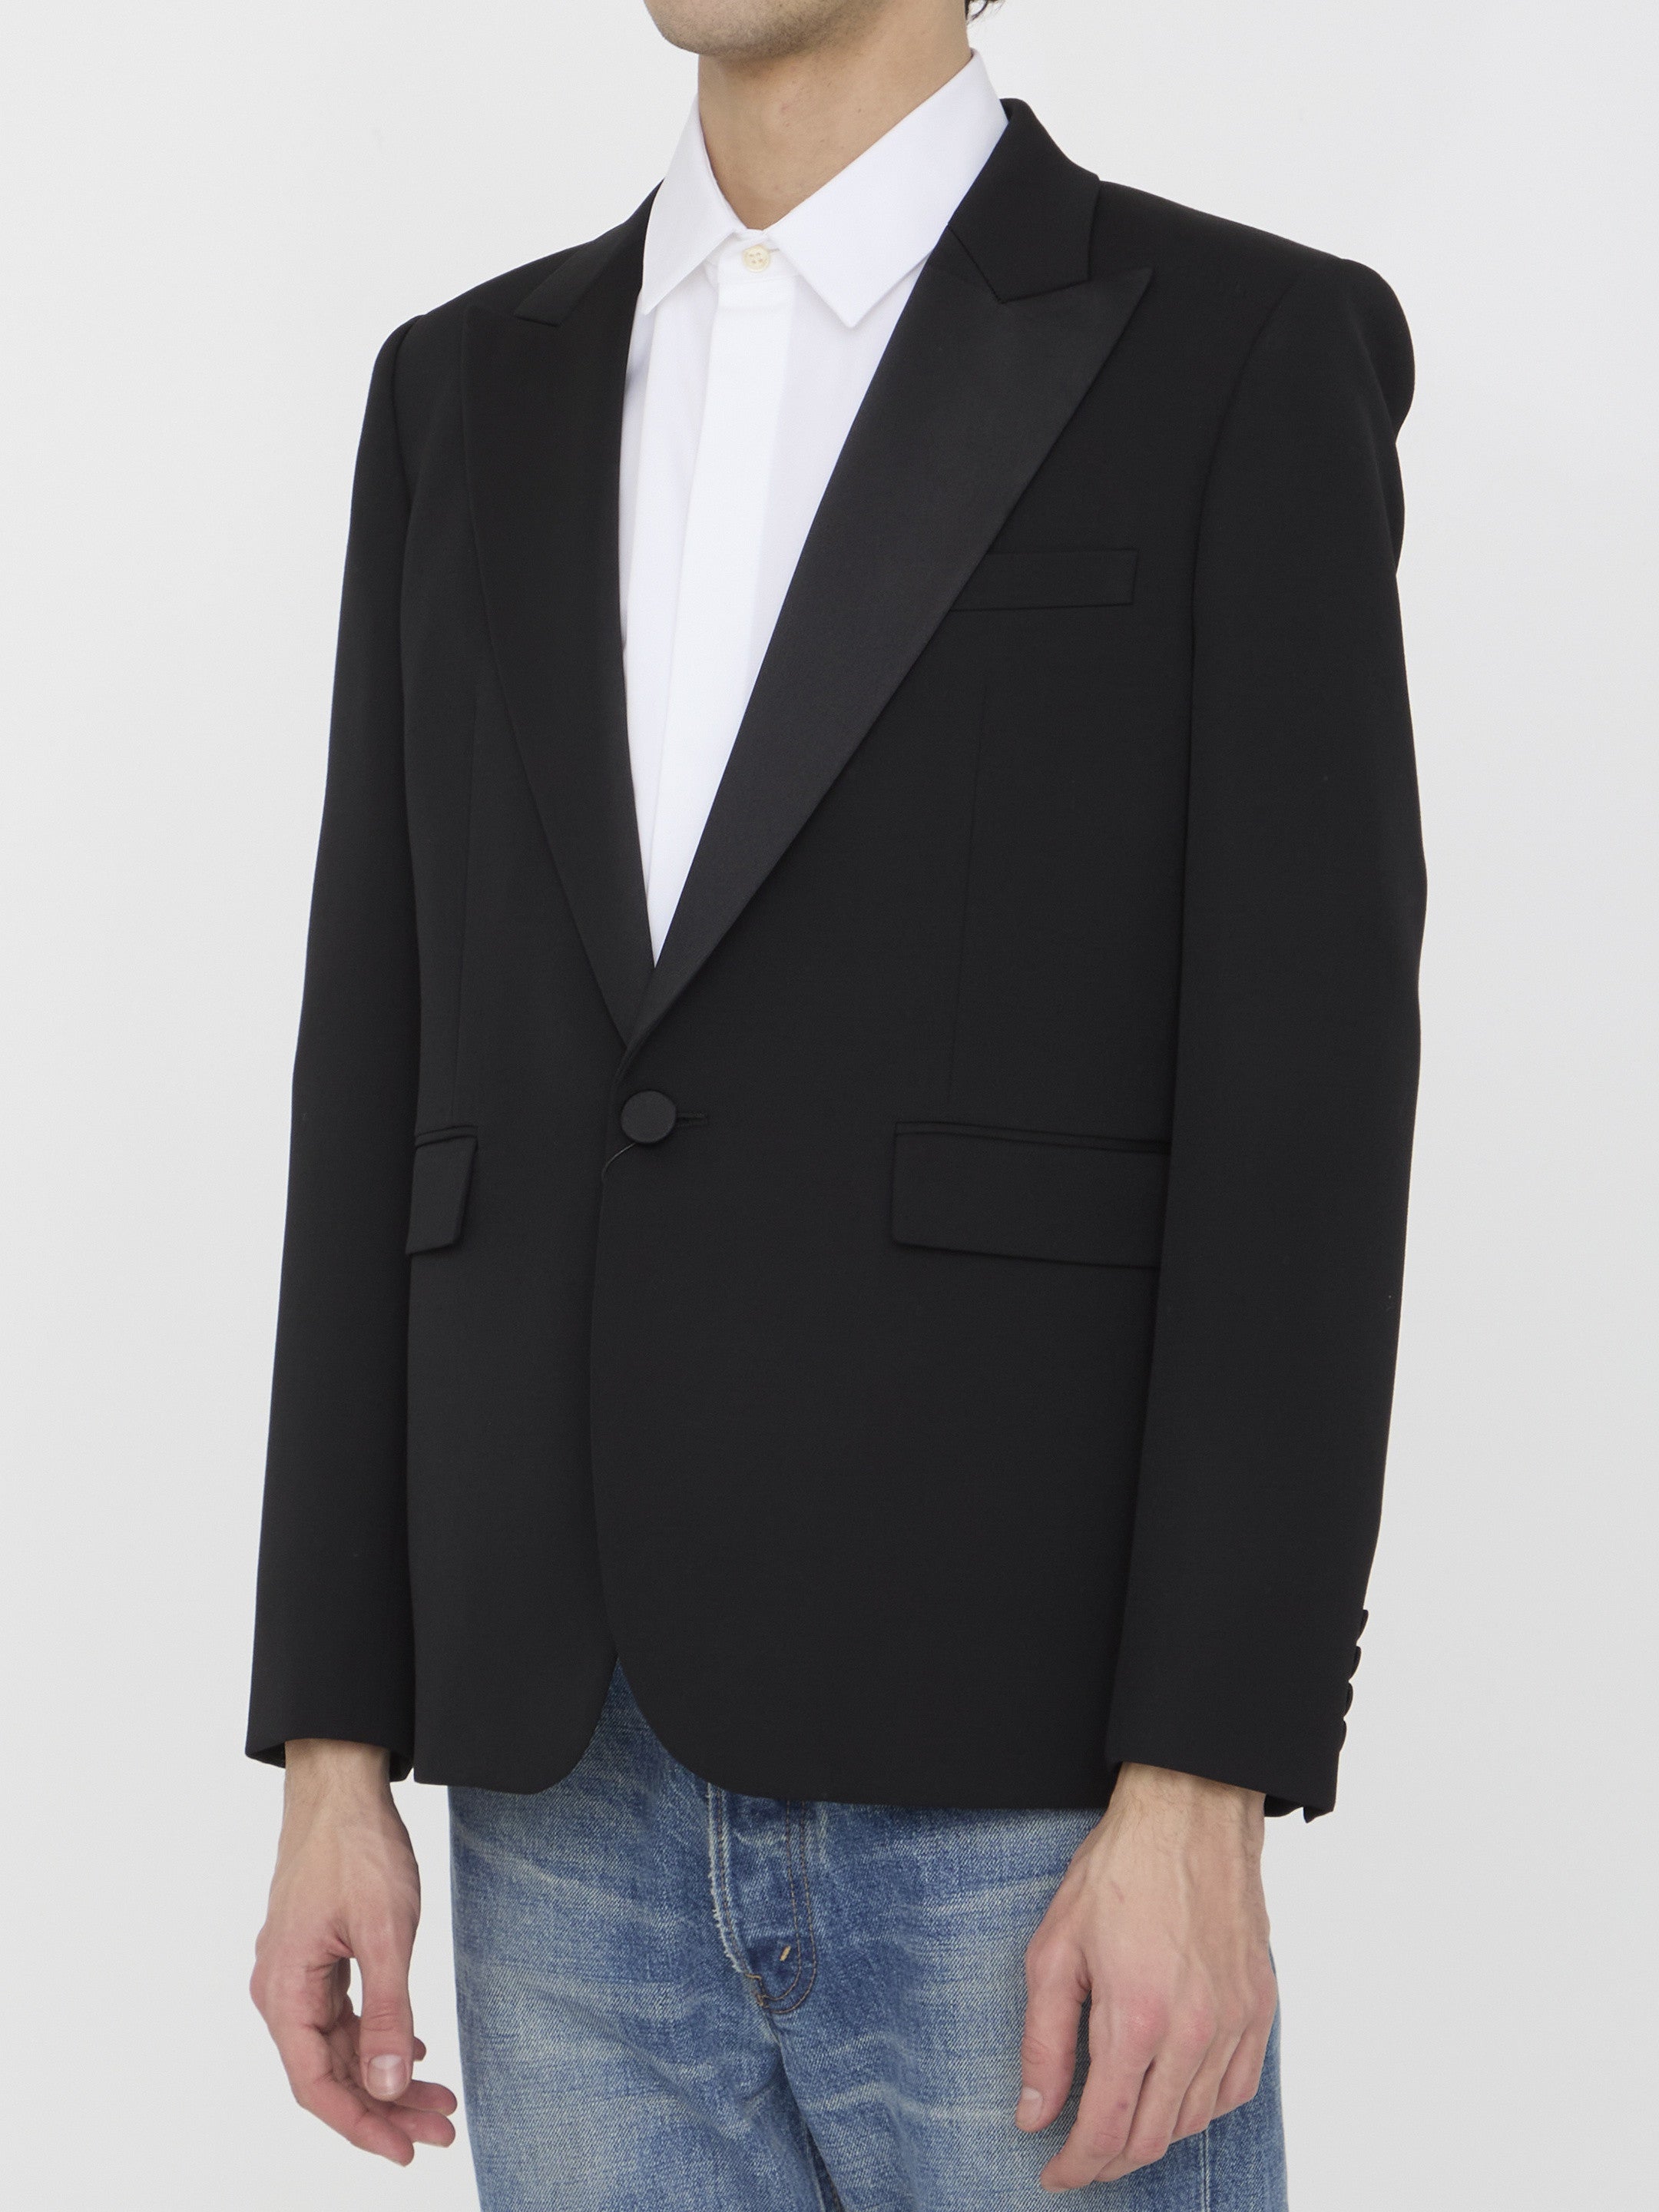 SAINT-LAURENT-OUTLET-SALE-Tuxedo-jacket-in-grain-de-poudre-Jacken-Mantel-ARCHIVE-COLLECTION-2.jpg